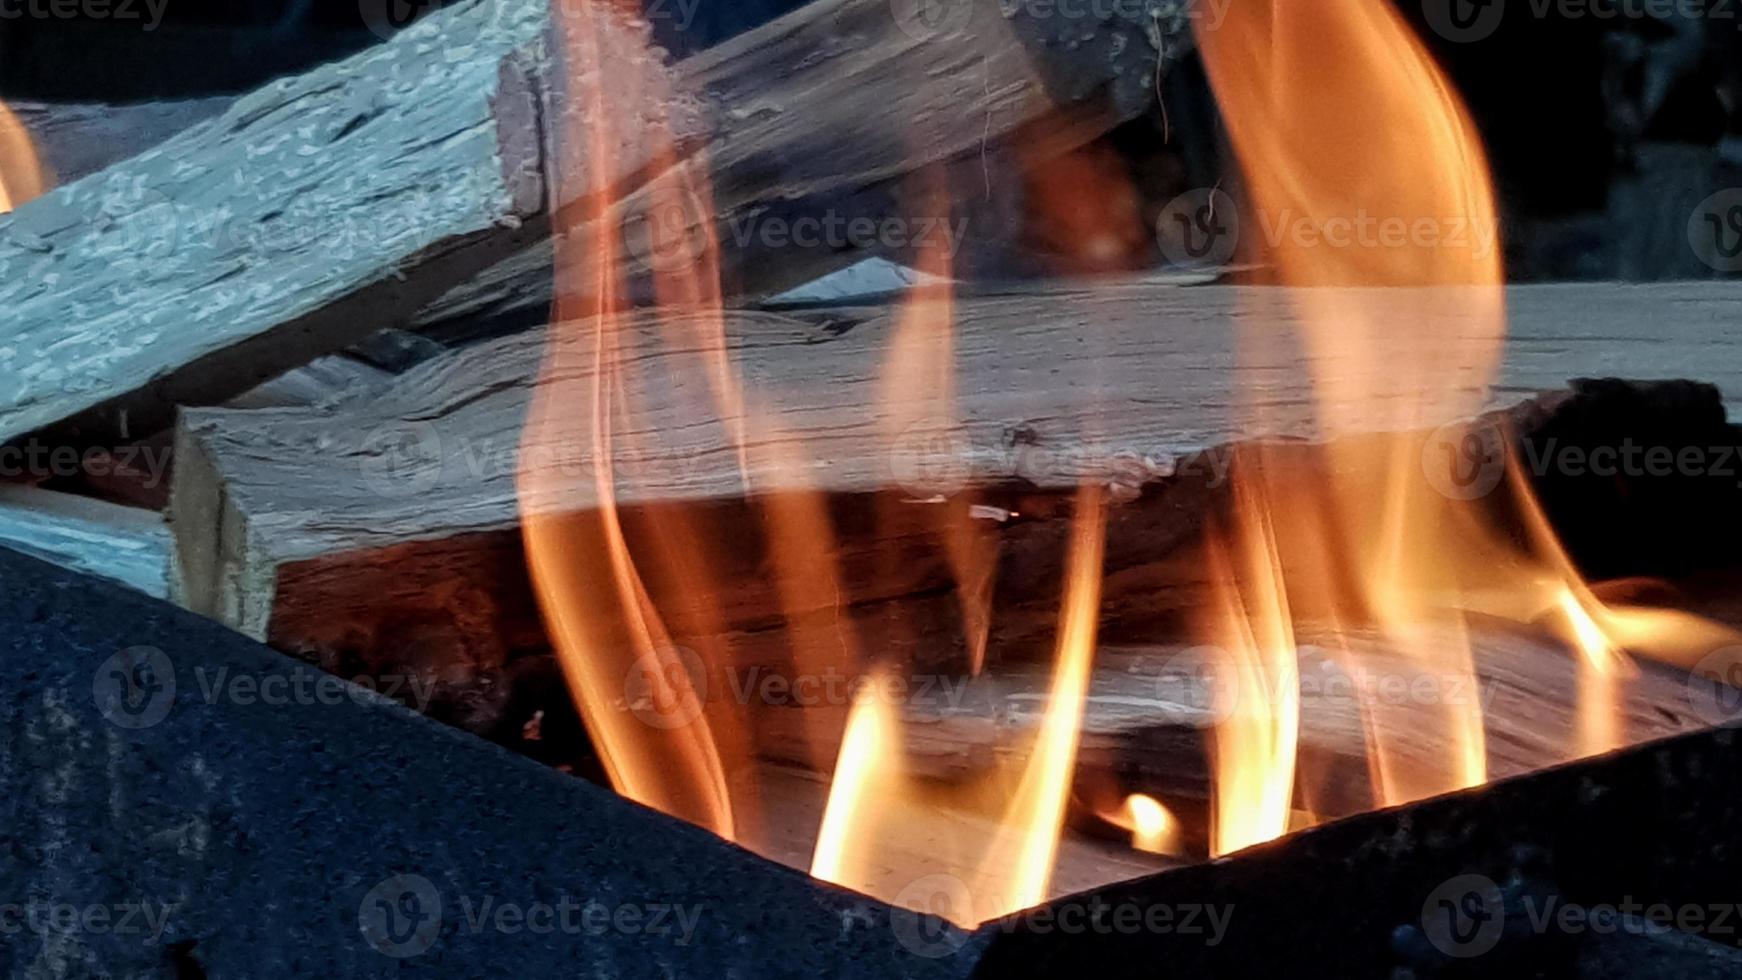 elddans, grillning på öppen eld. eld i grillen med brinnande ved. förbered kol innan du grillar kött eller fisk utomhus. låga i eldstaden. bbq förberedelse foto